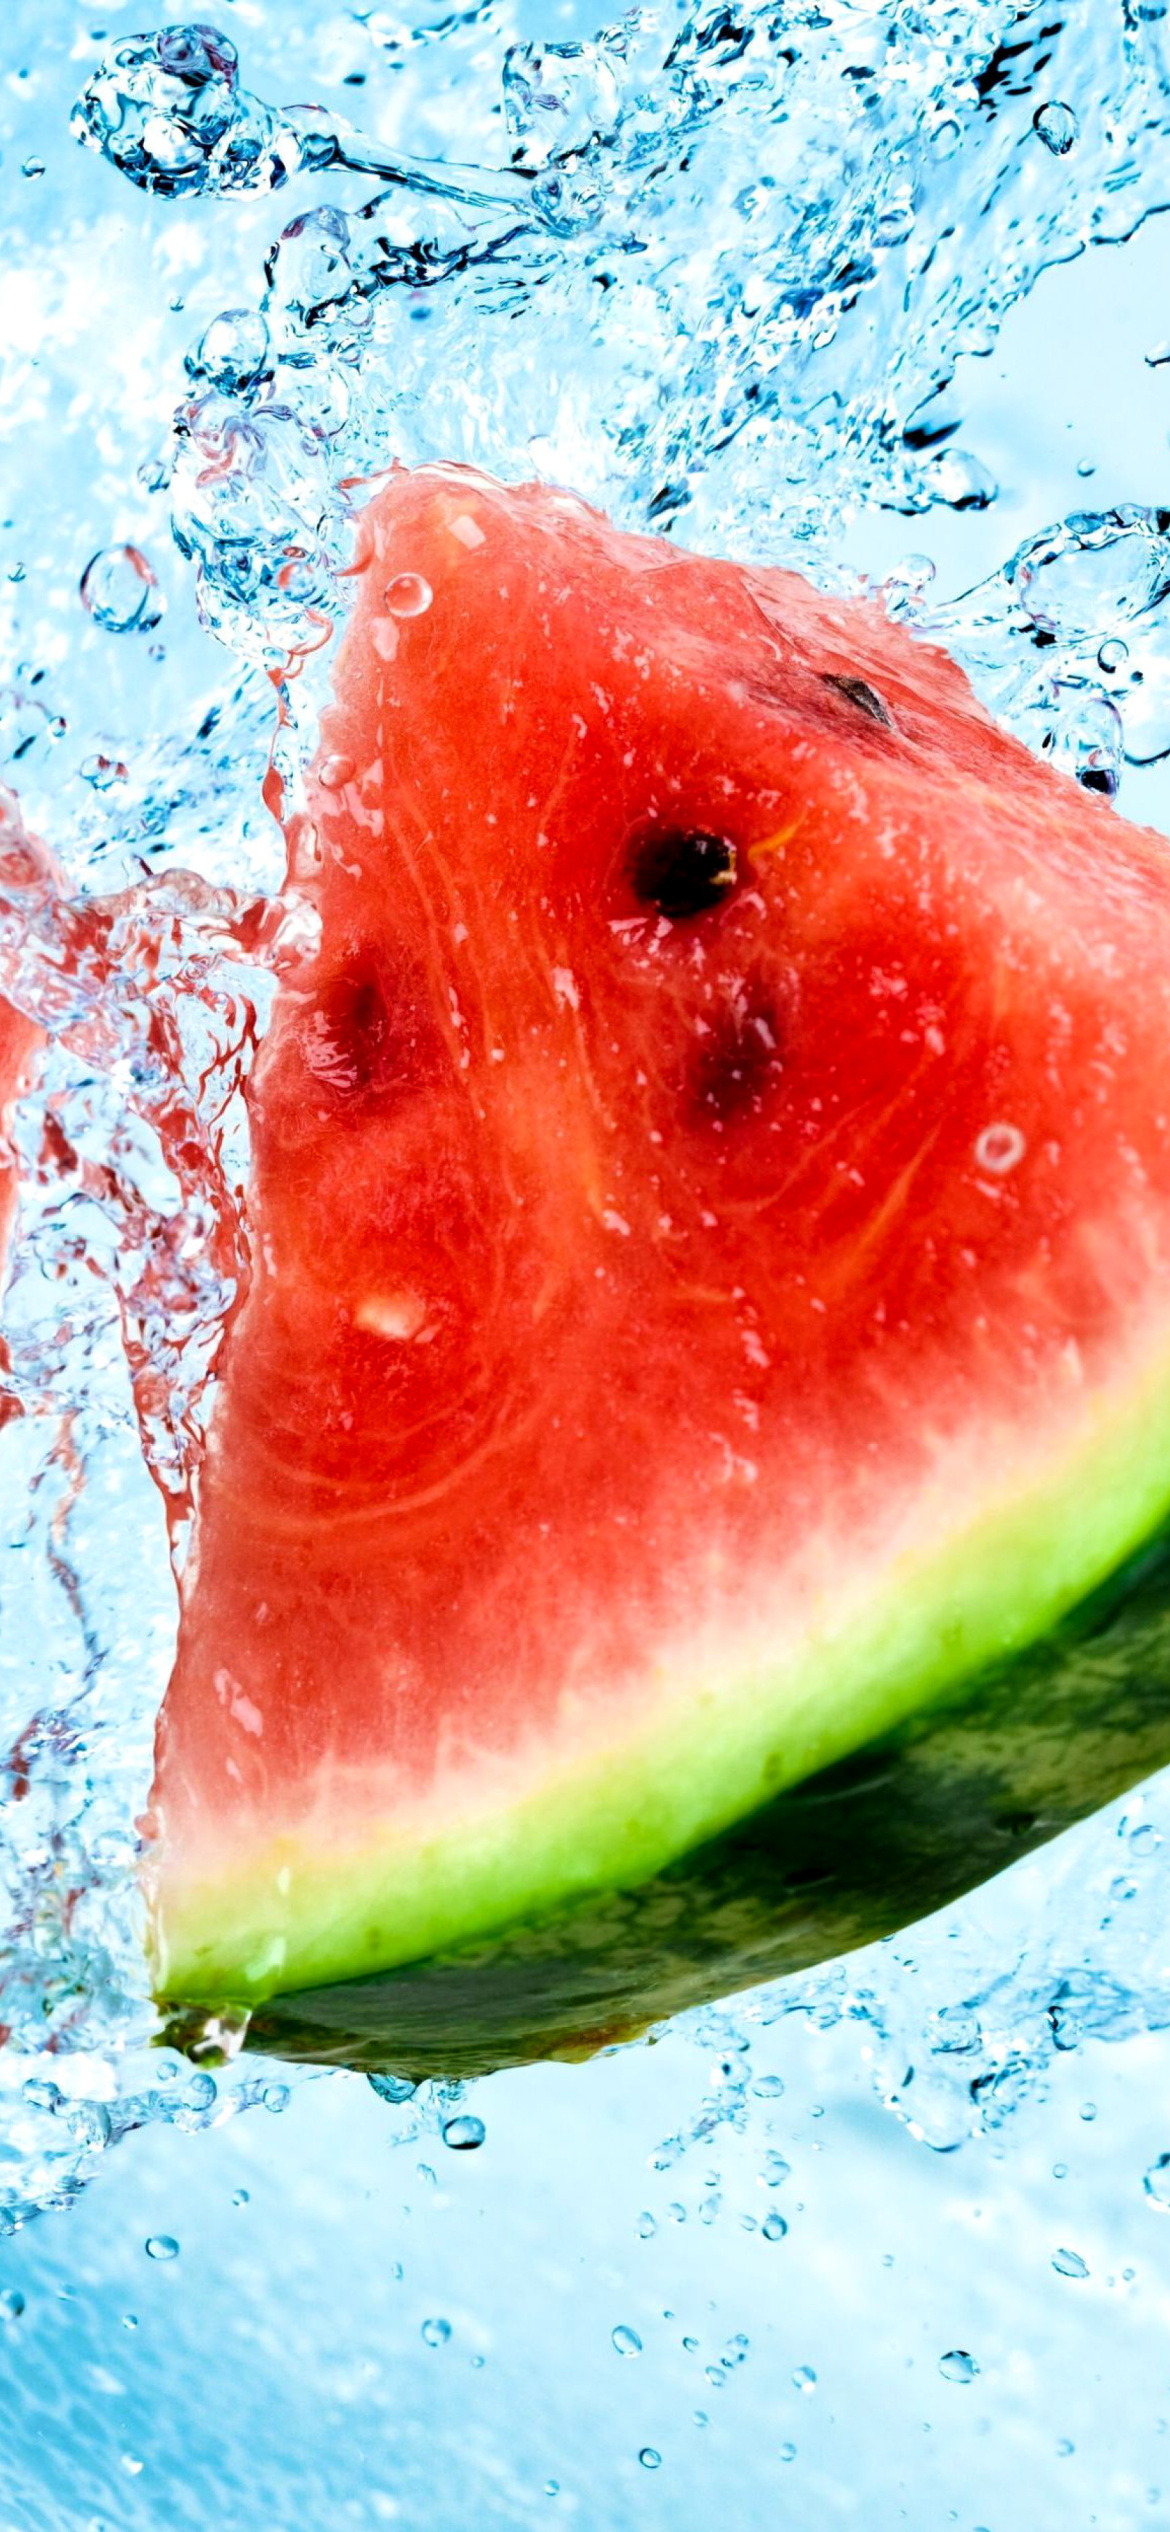 Обои Watermelon Triangle Slices 1170x2532